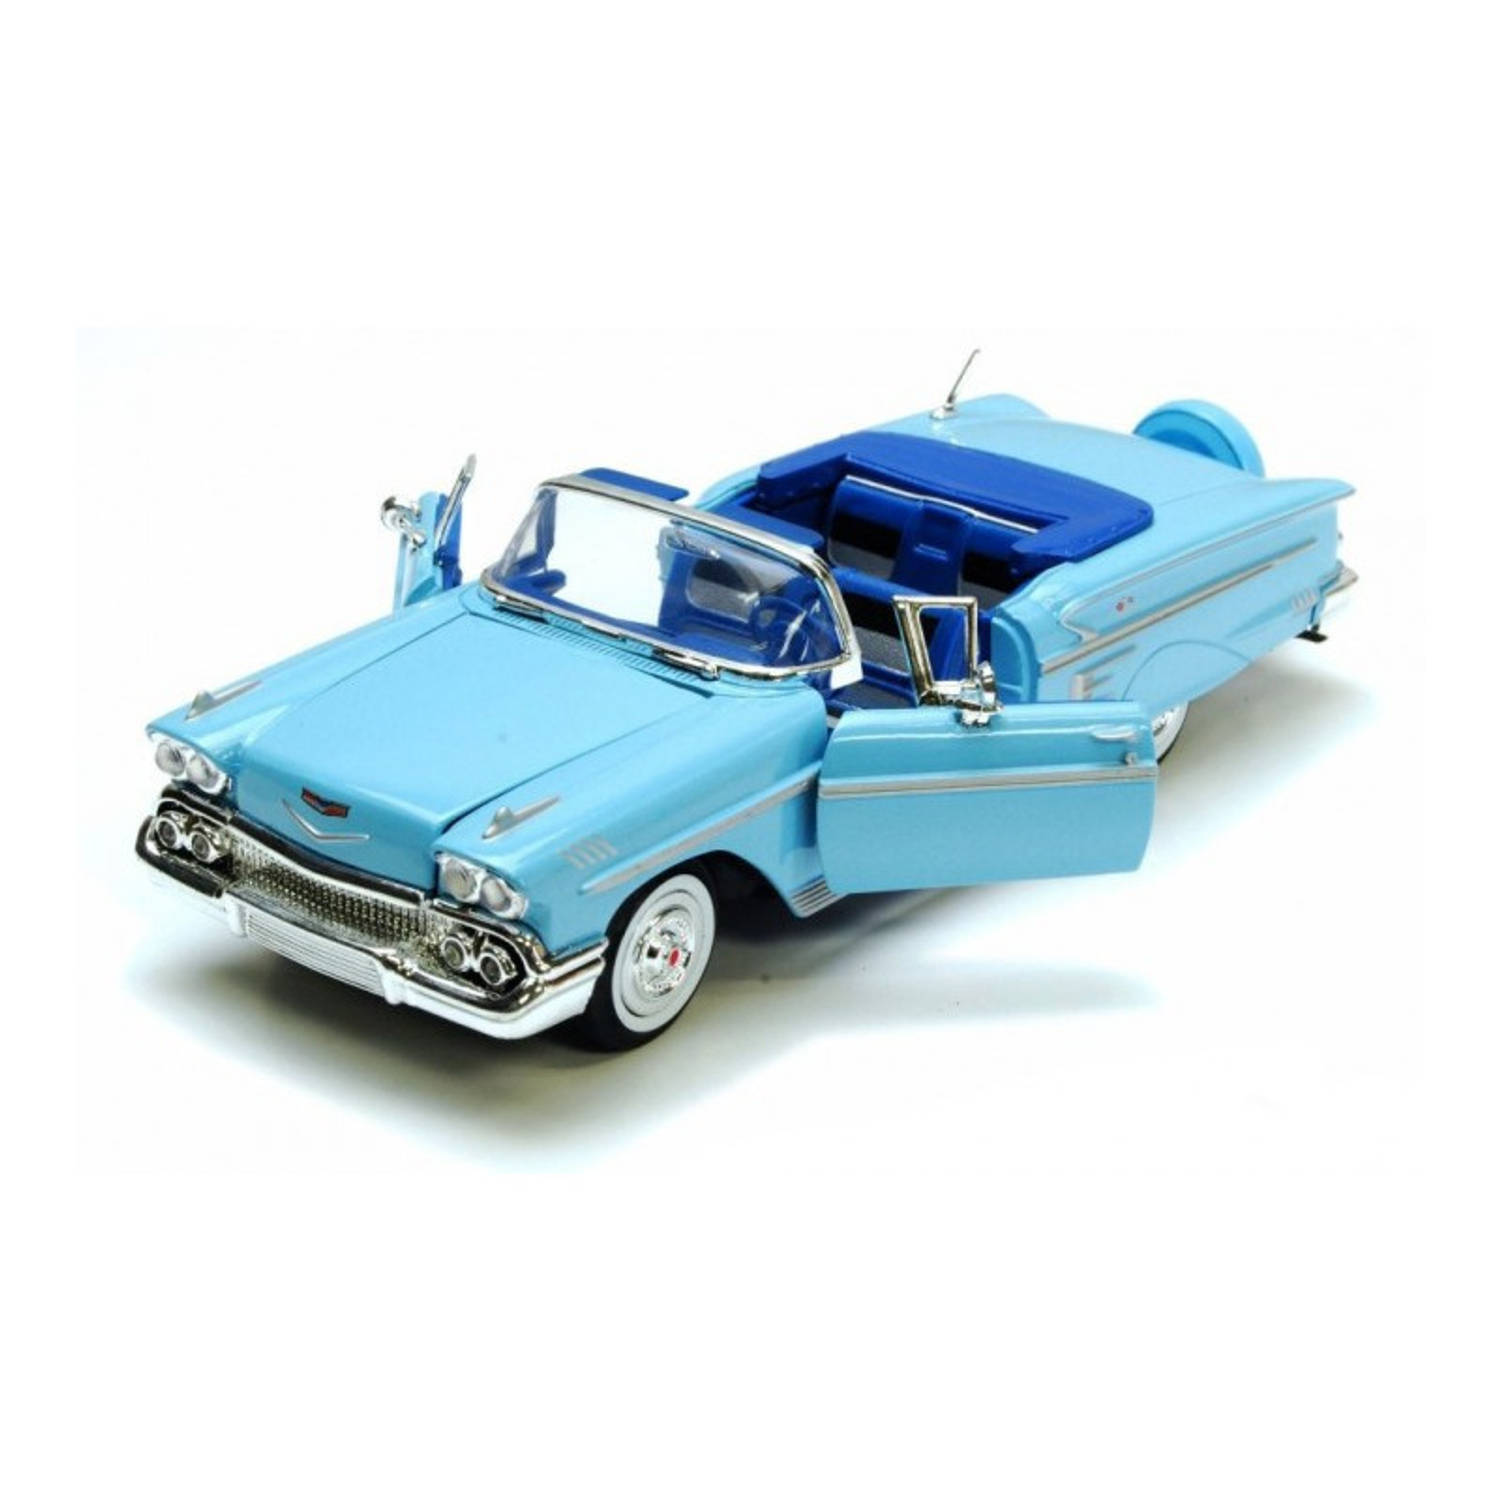 Speelgoedauto Chevrolet Impala 1958 blauw 1:24/22 x 8 x 6 cm - Speelgoed auto's